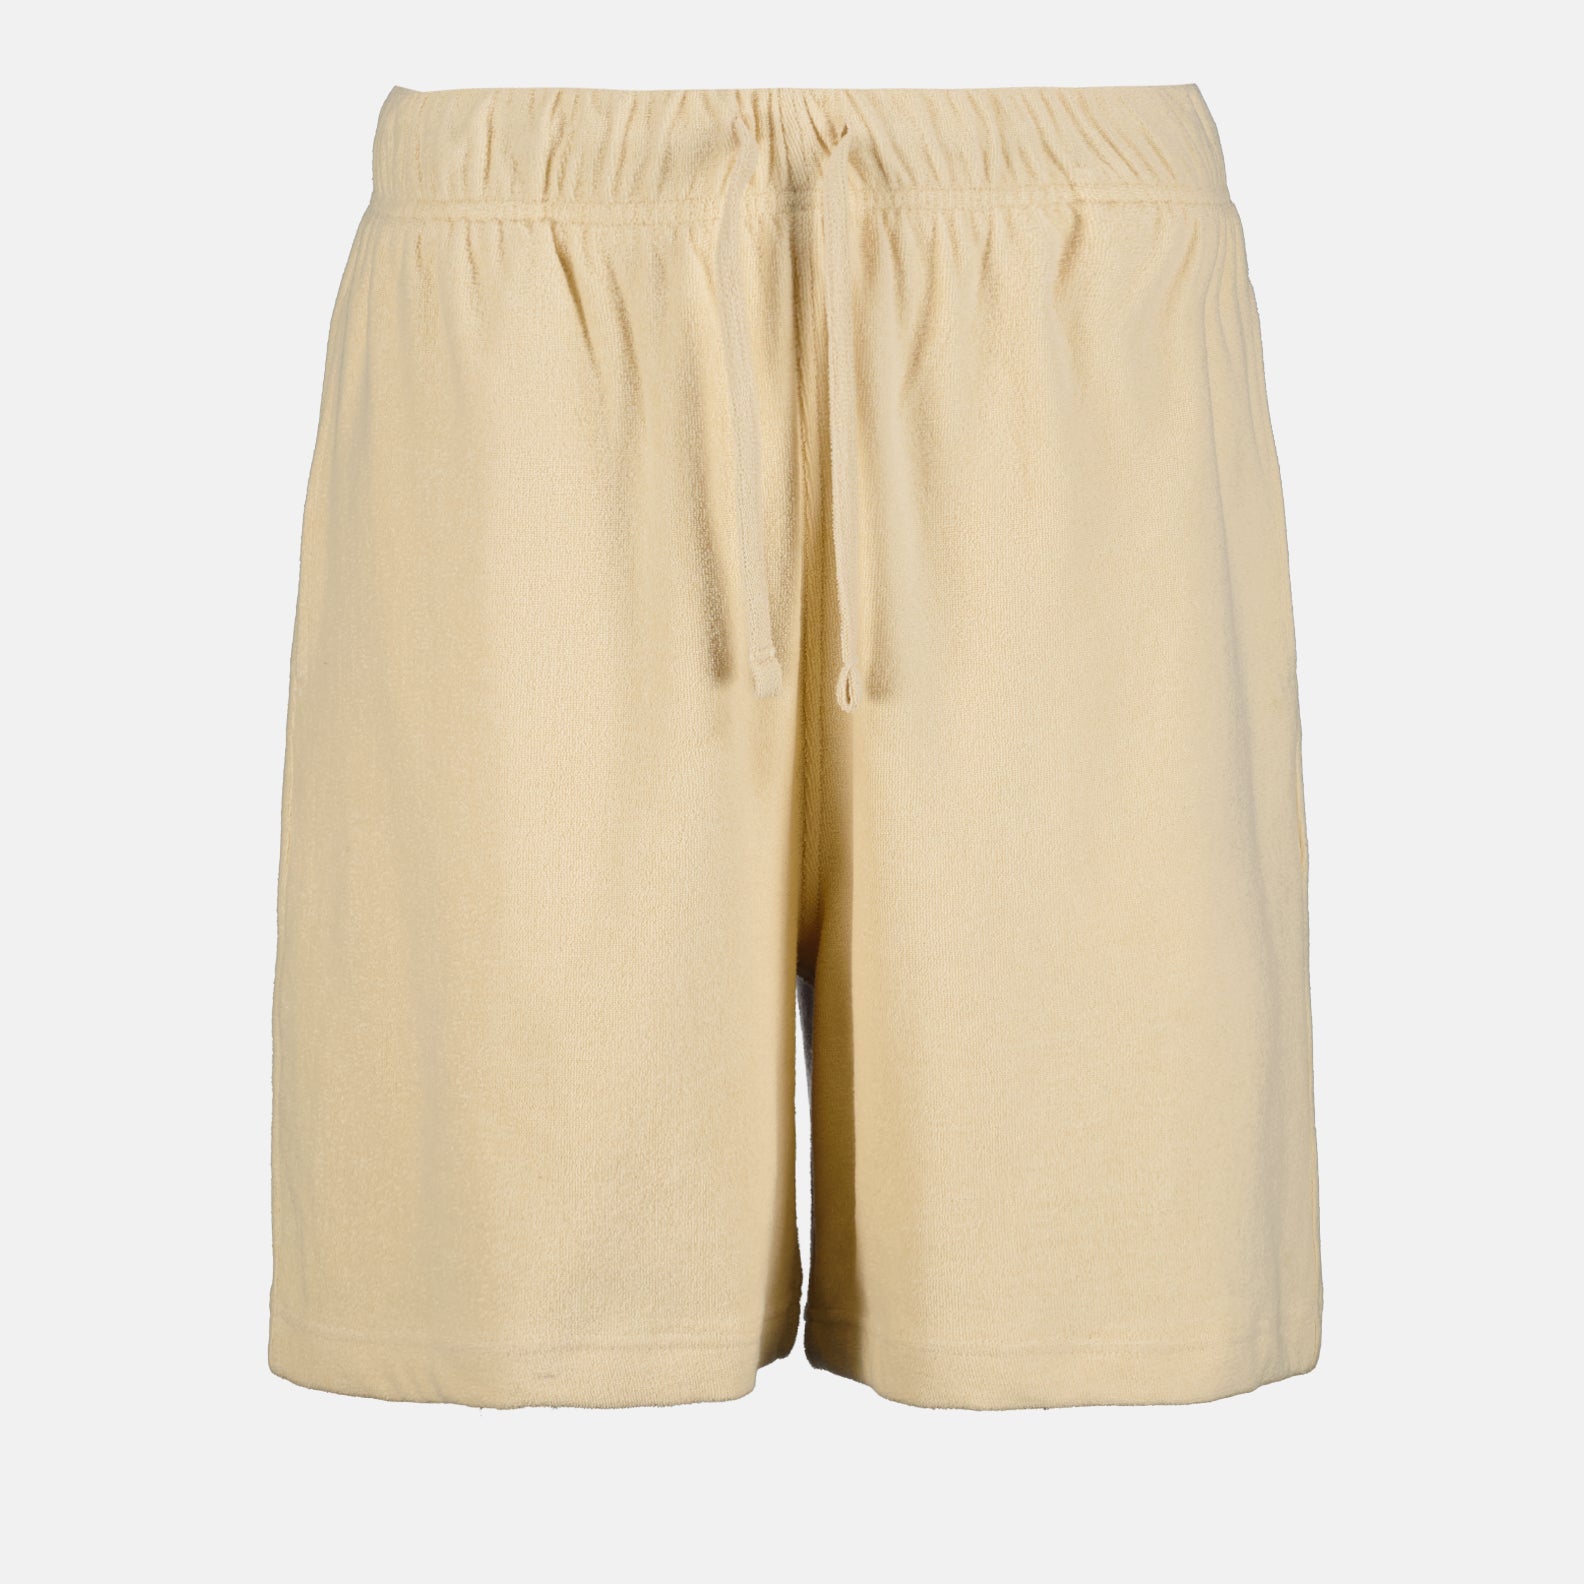 EKD cotton shorts